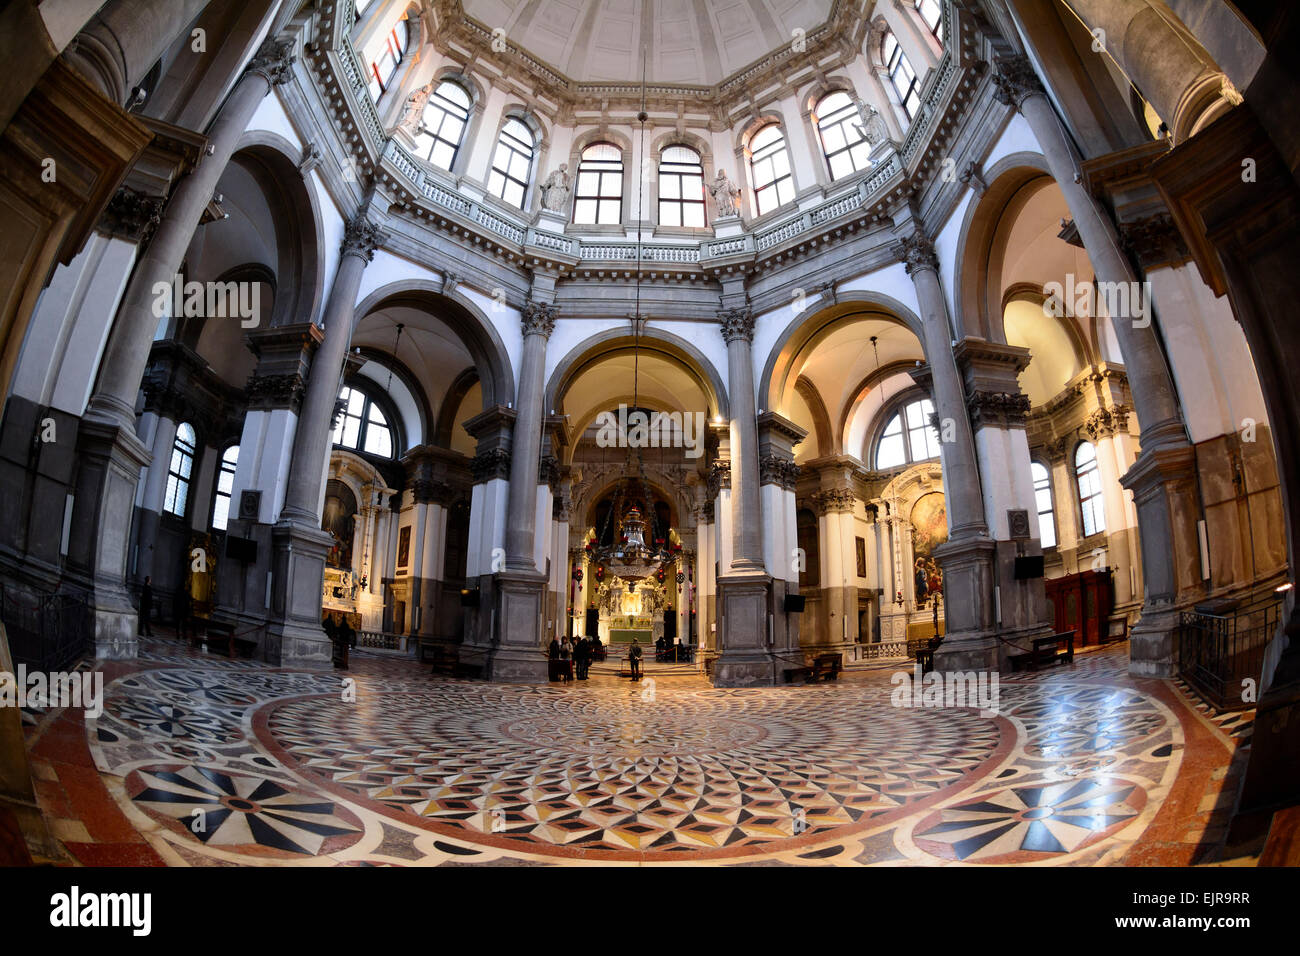 Interior of Basilica di Santa Maria della Salute, Roman Catholic church, Venice, Italy. Stock Photo